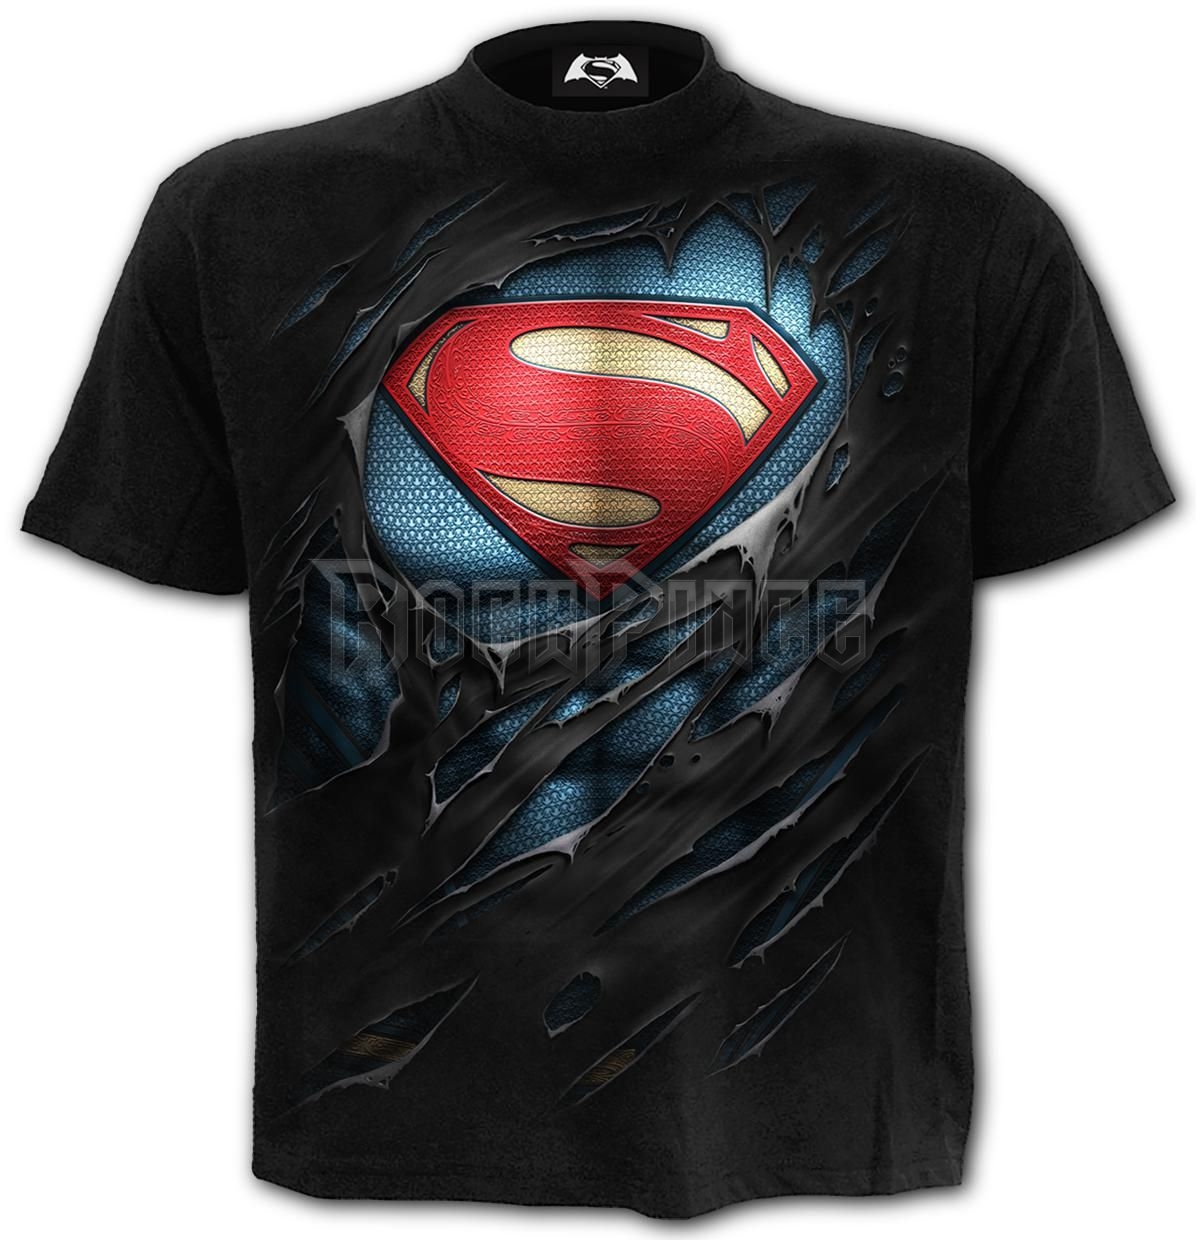 SUPERMAN - RIPPED - T-Shirt Black - G407M101